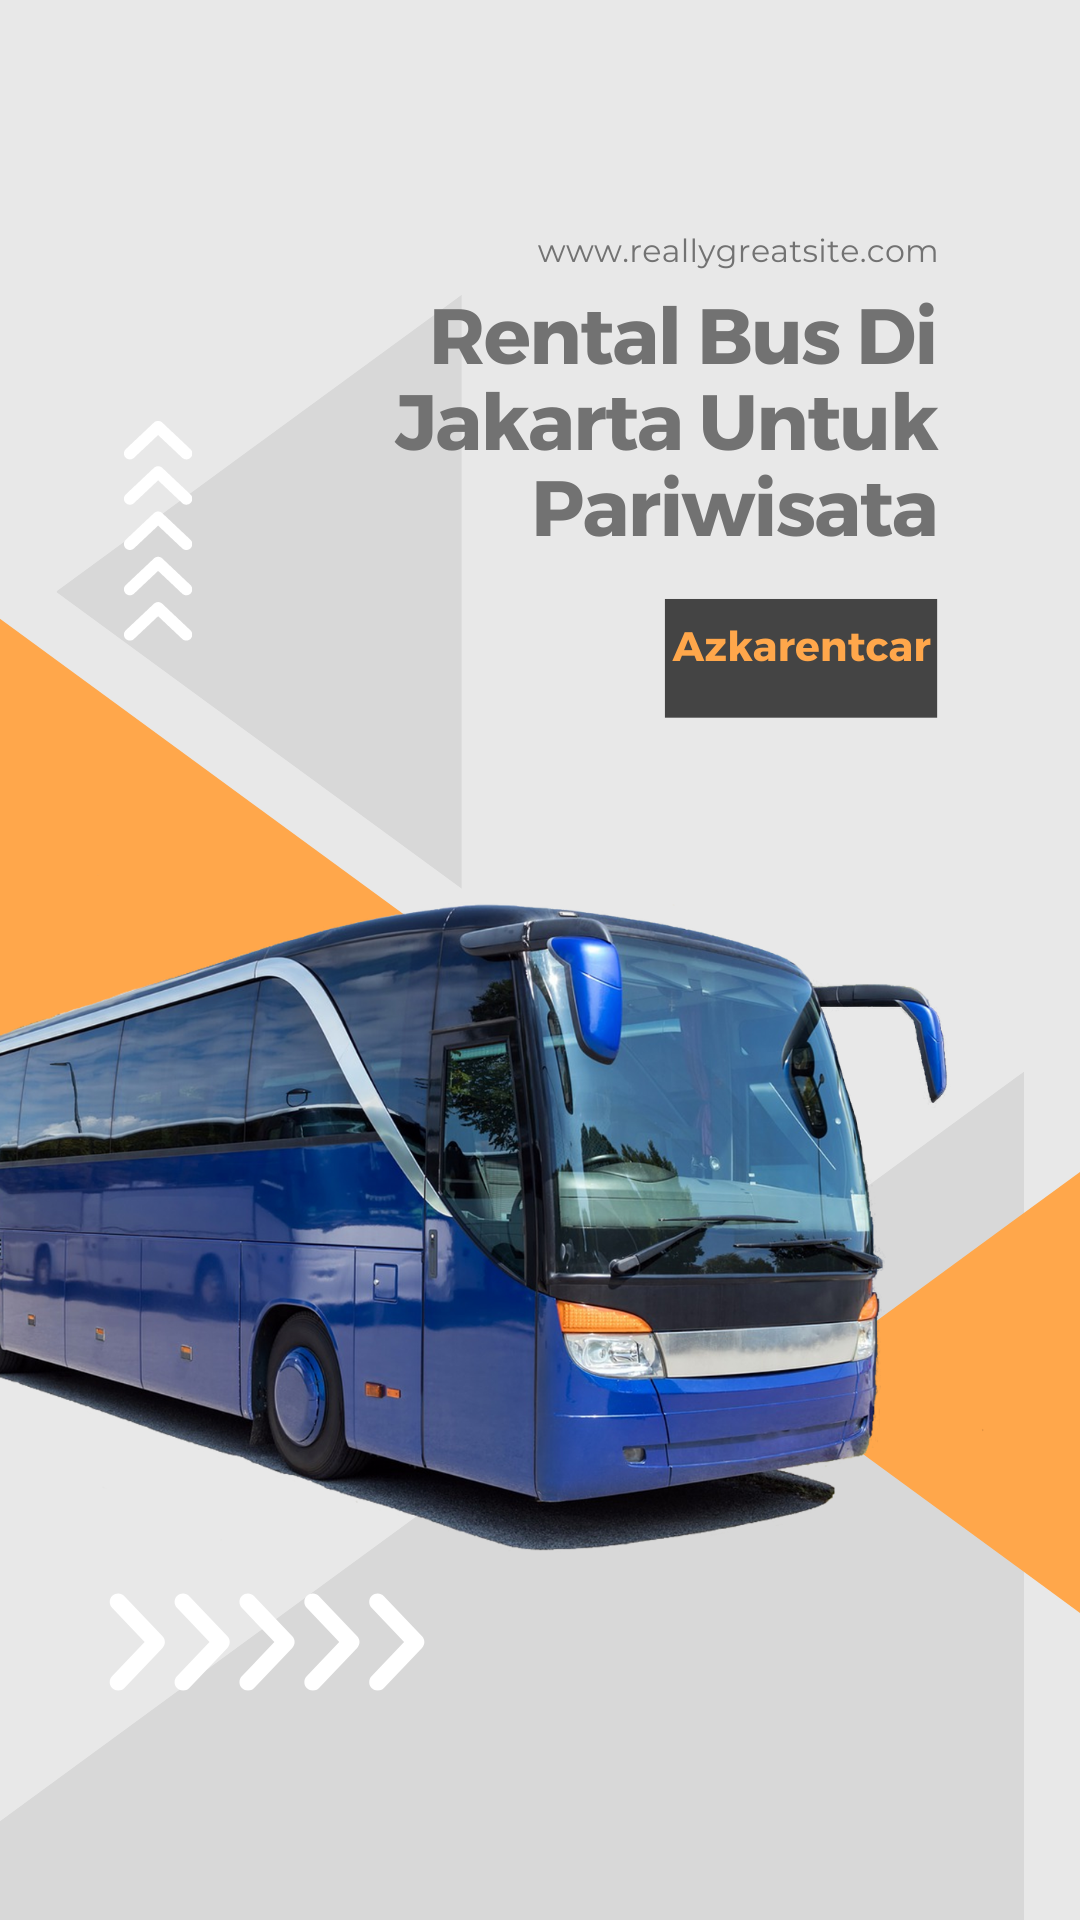 Rental Bus Di Jakarta Untuk Pariwisata